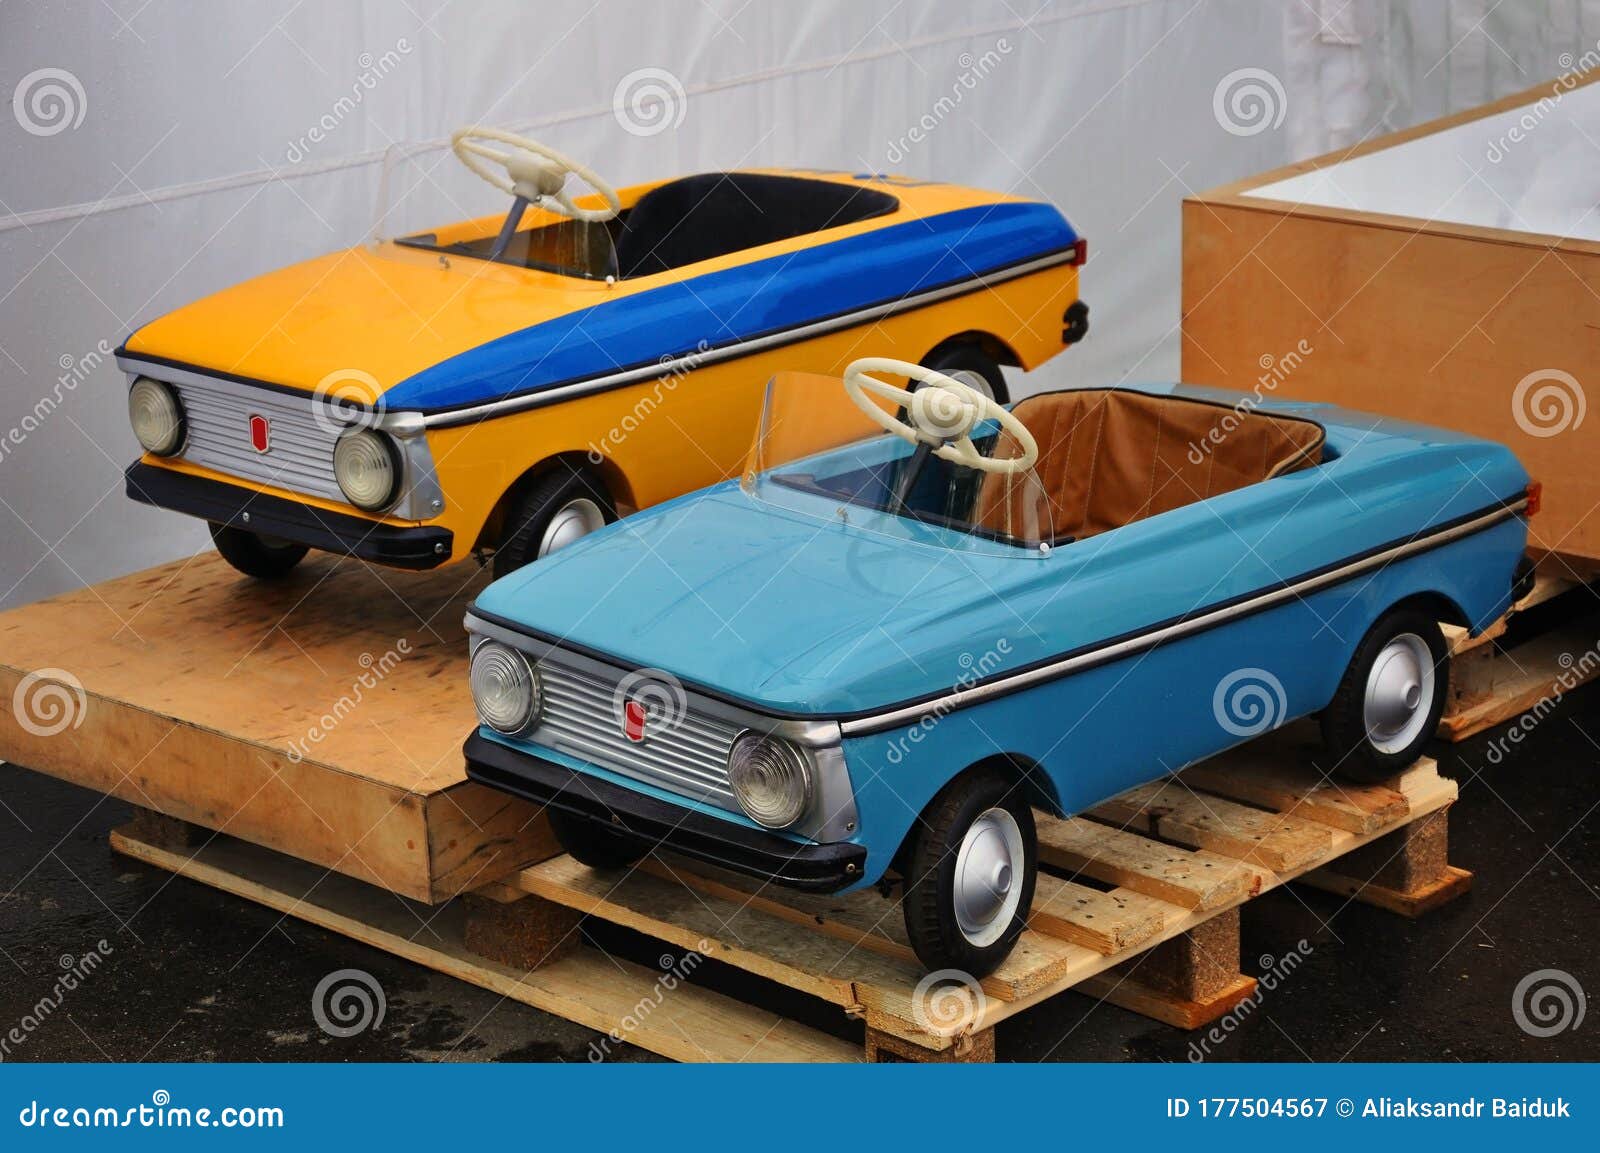 60 70 80年代踏板驱动的复古儿童玩具车库存图片 图片包括有60 70 80年代踏板驱动的复古儿童玩具车